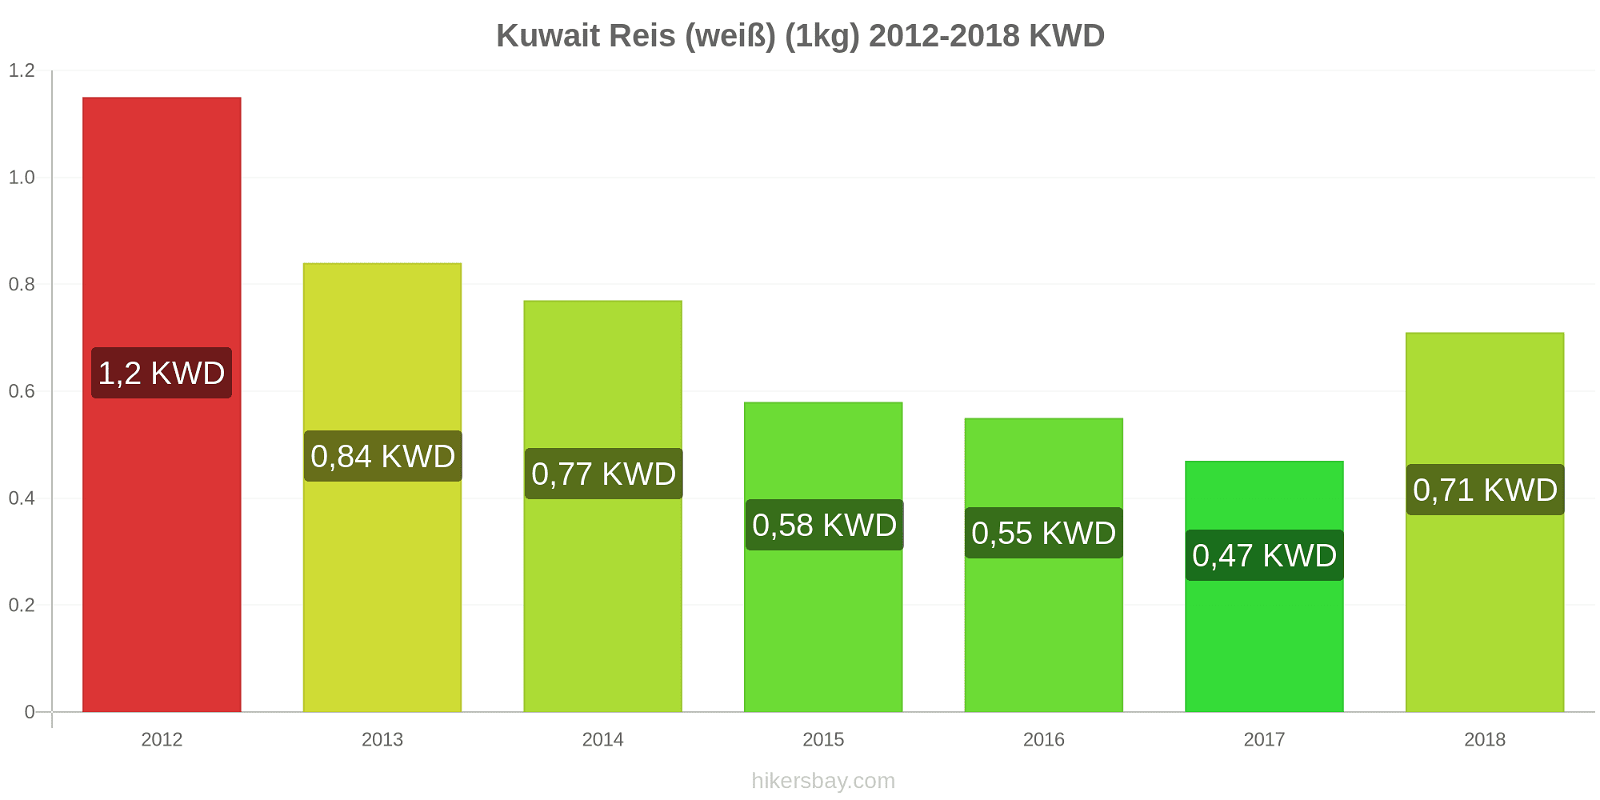 Kuwait Preisänderungen Reis (weiß) (1kg) hikersbay.com